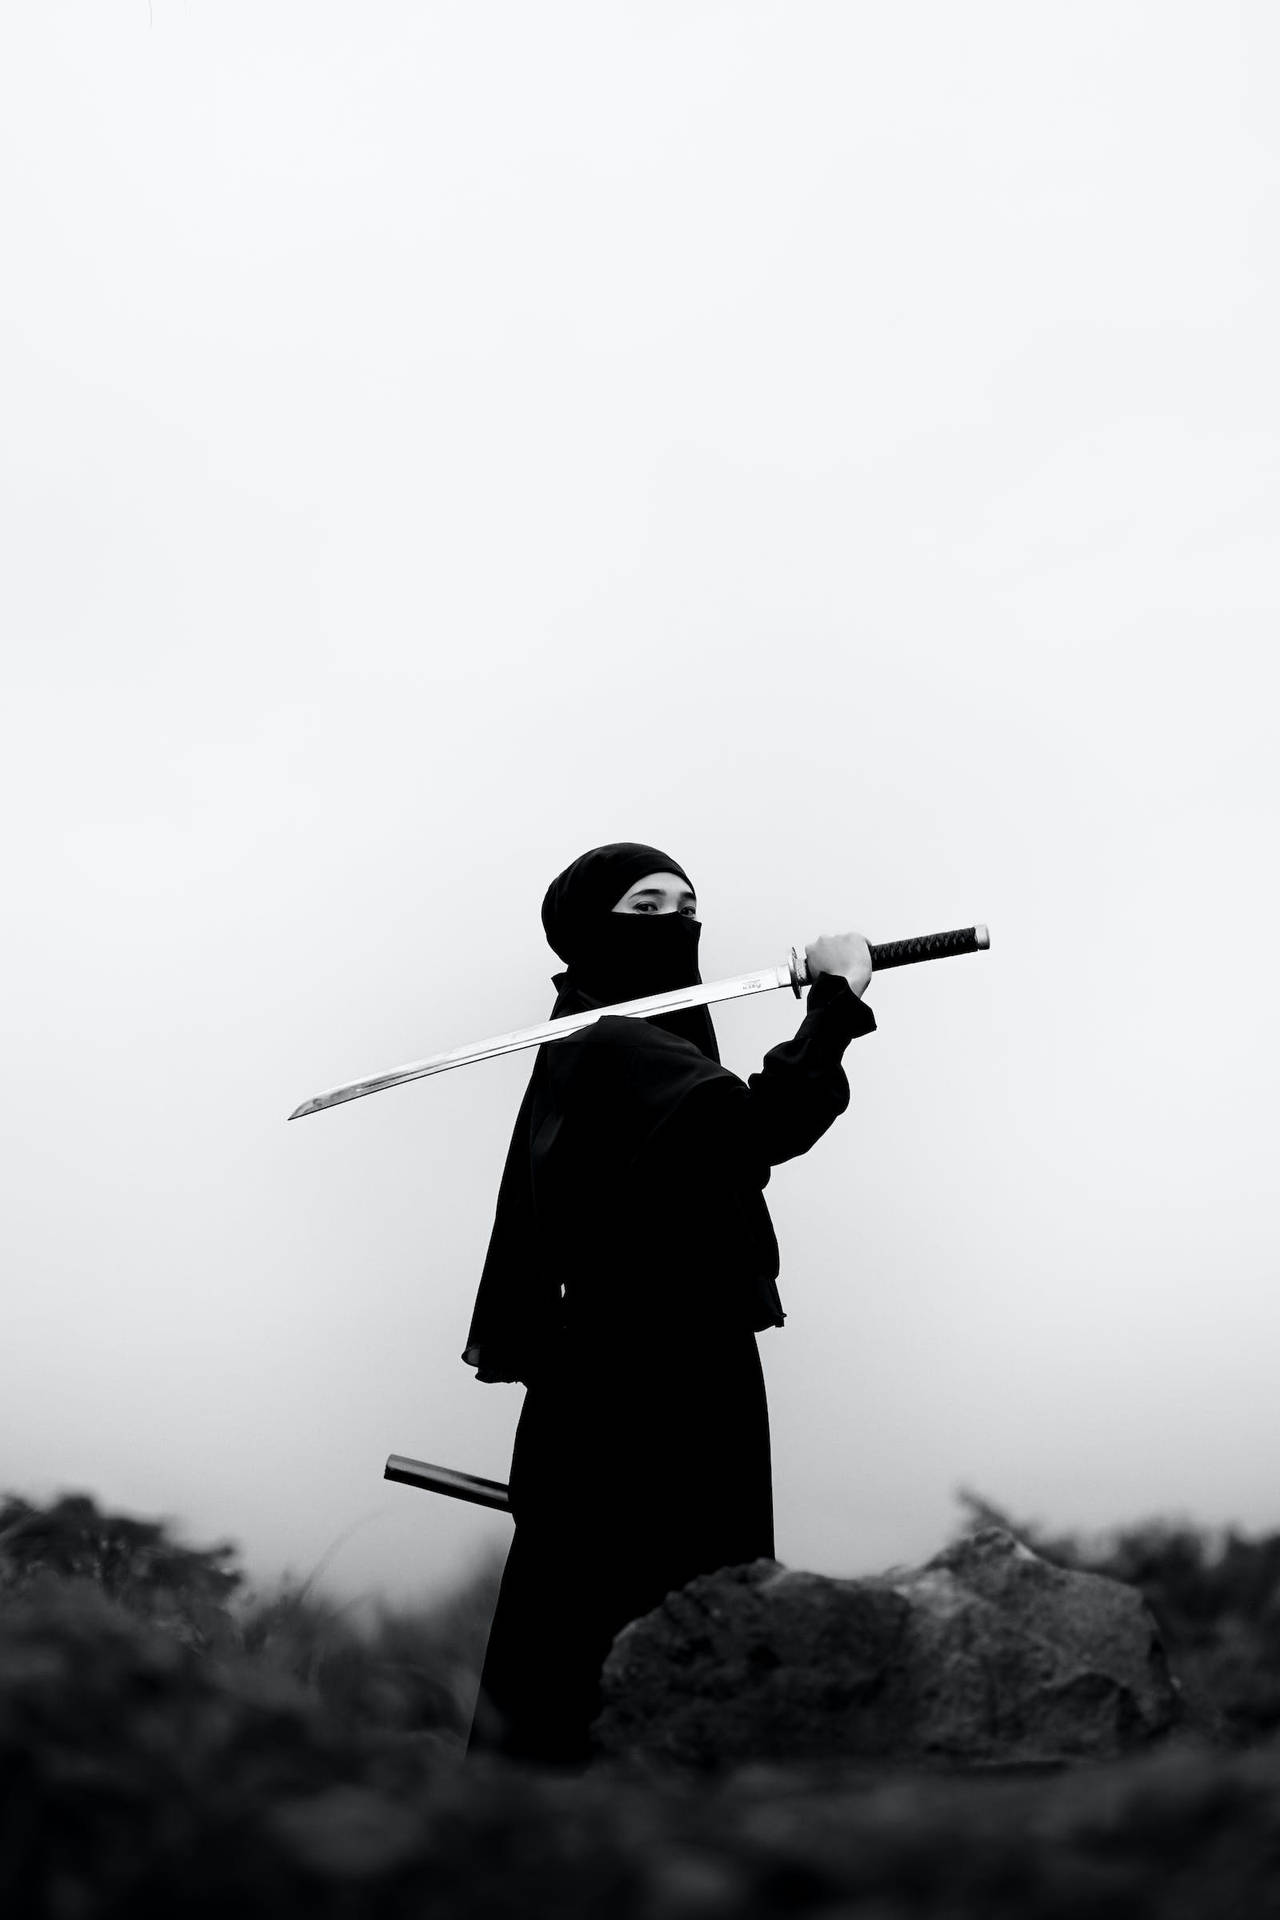 Download 8k Samurai In Black Outfit Wallpaper | Wallpapers.com